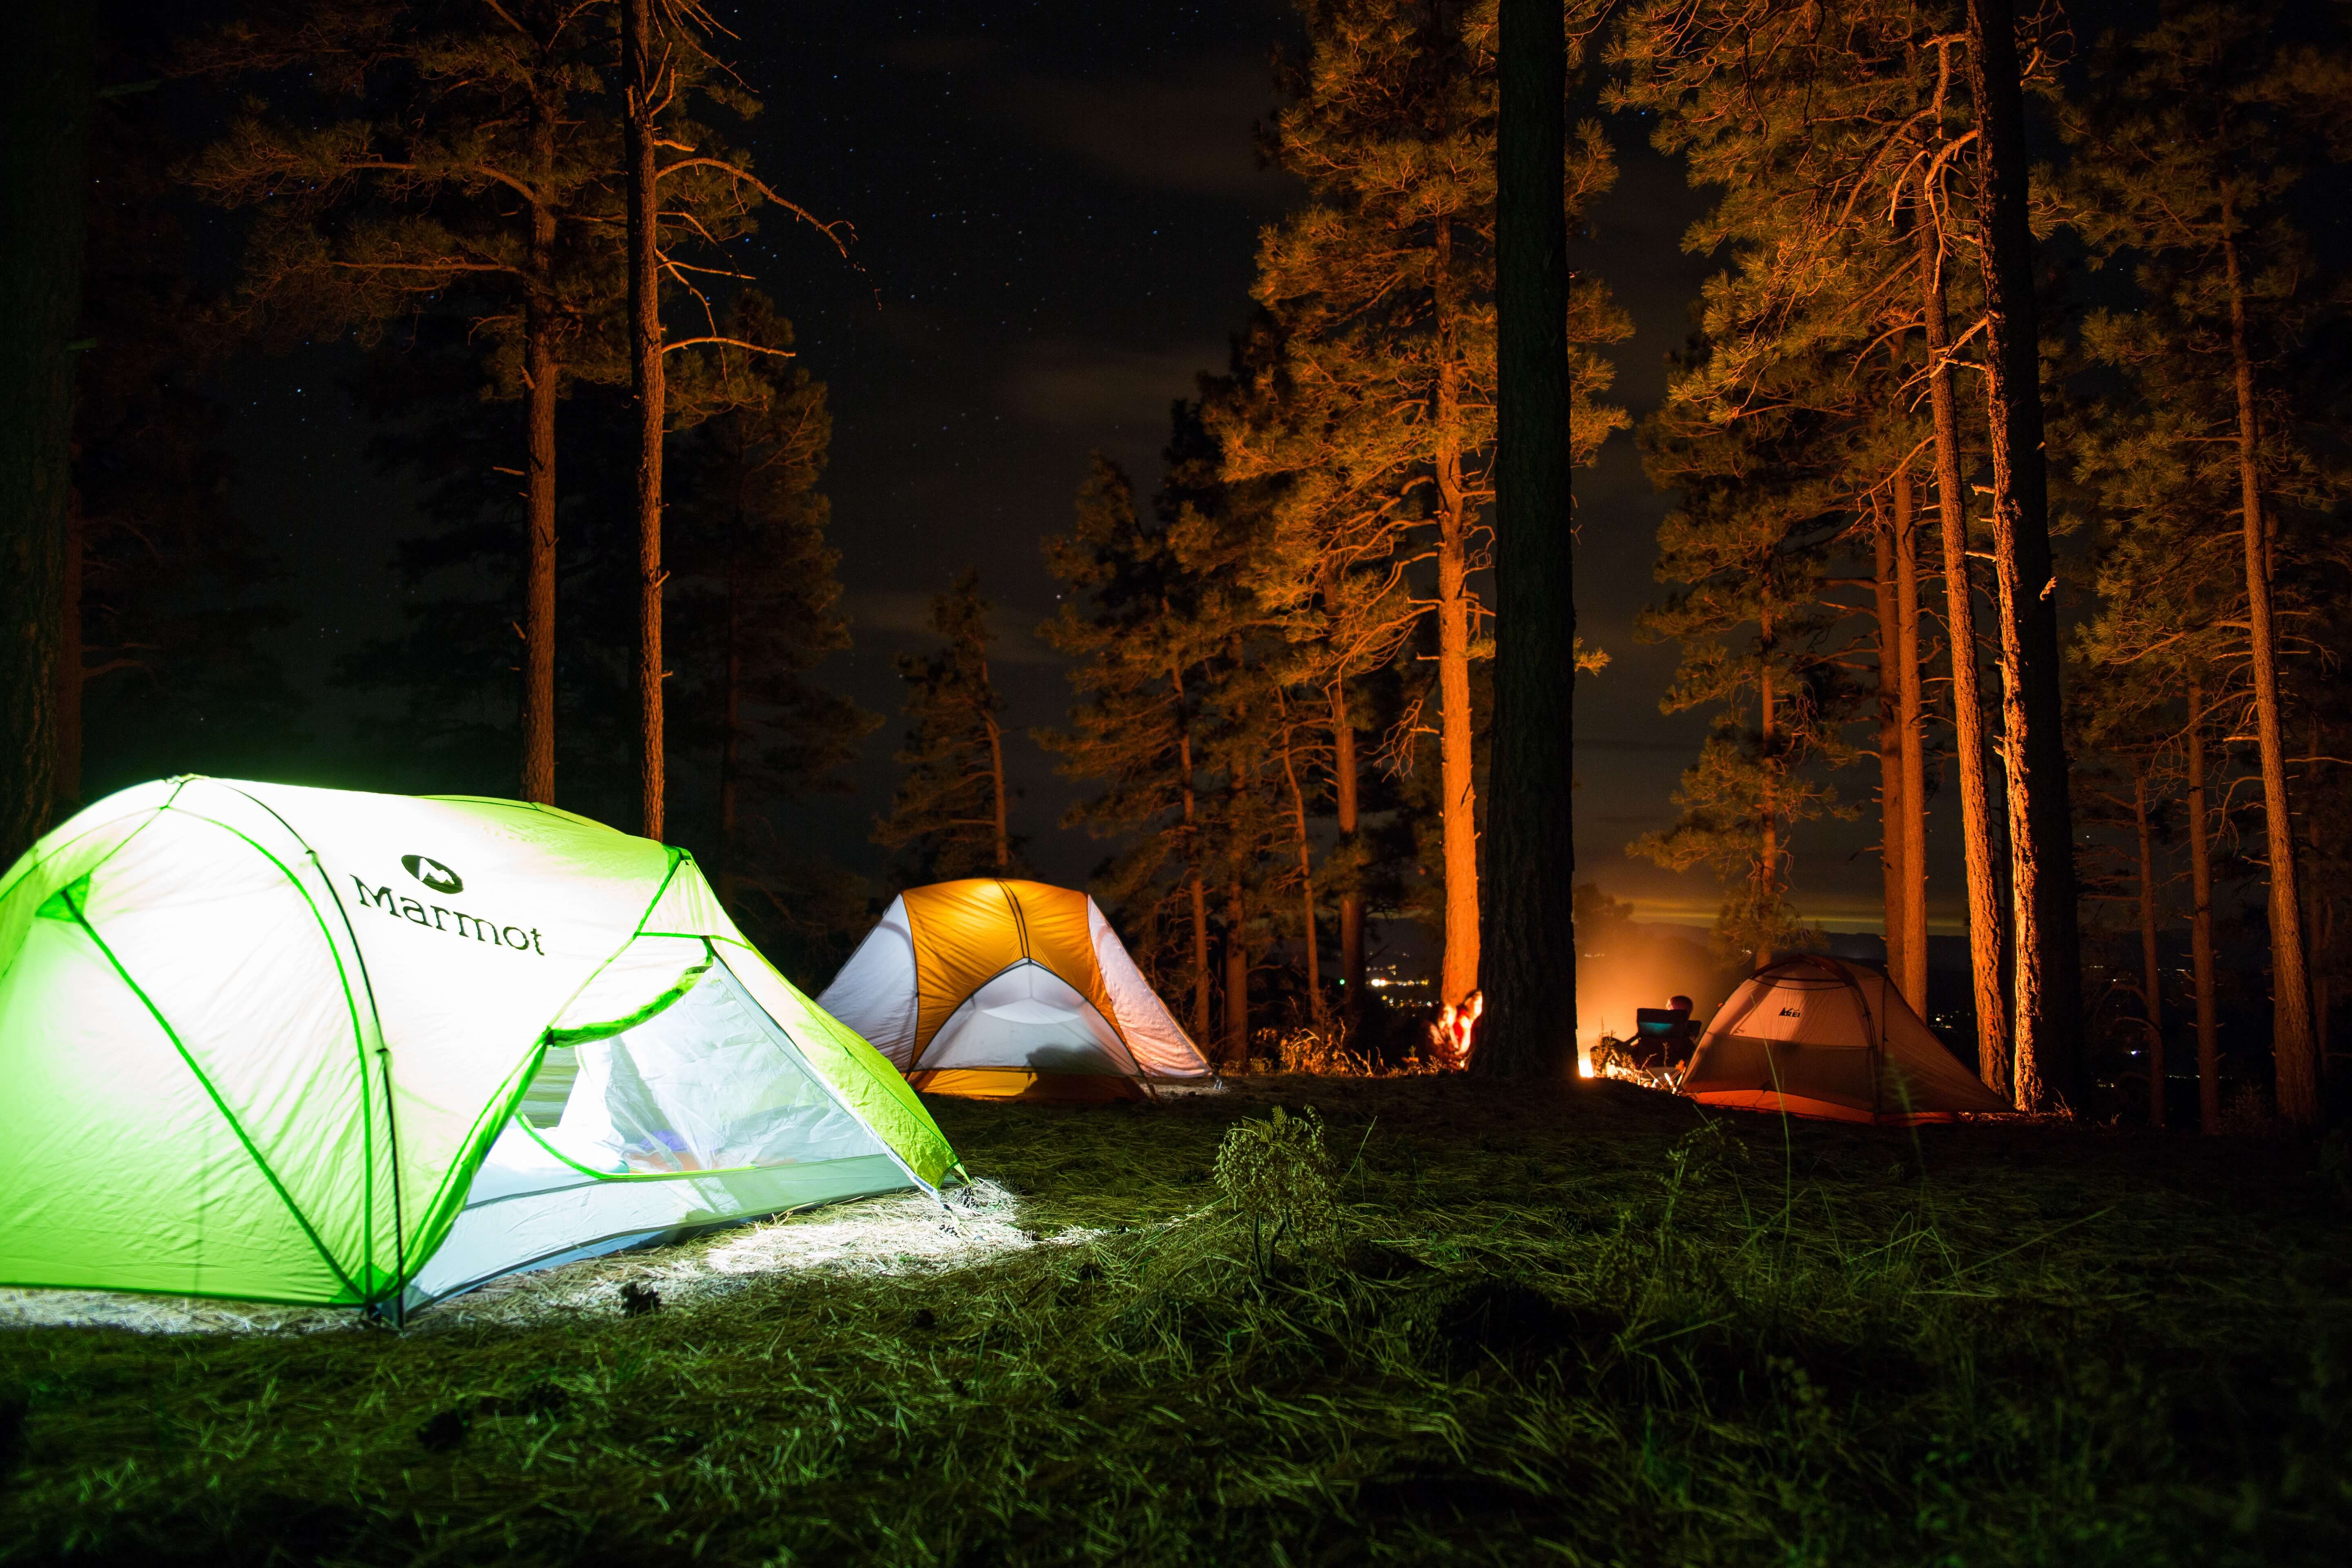 캠핑 텐트 추천